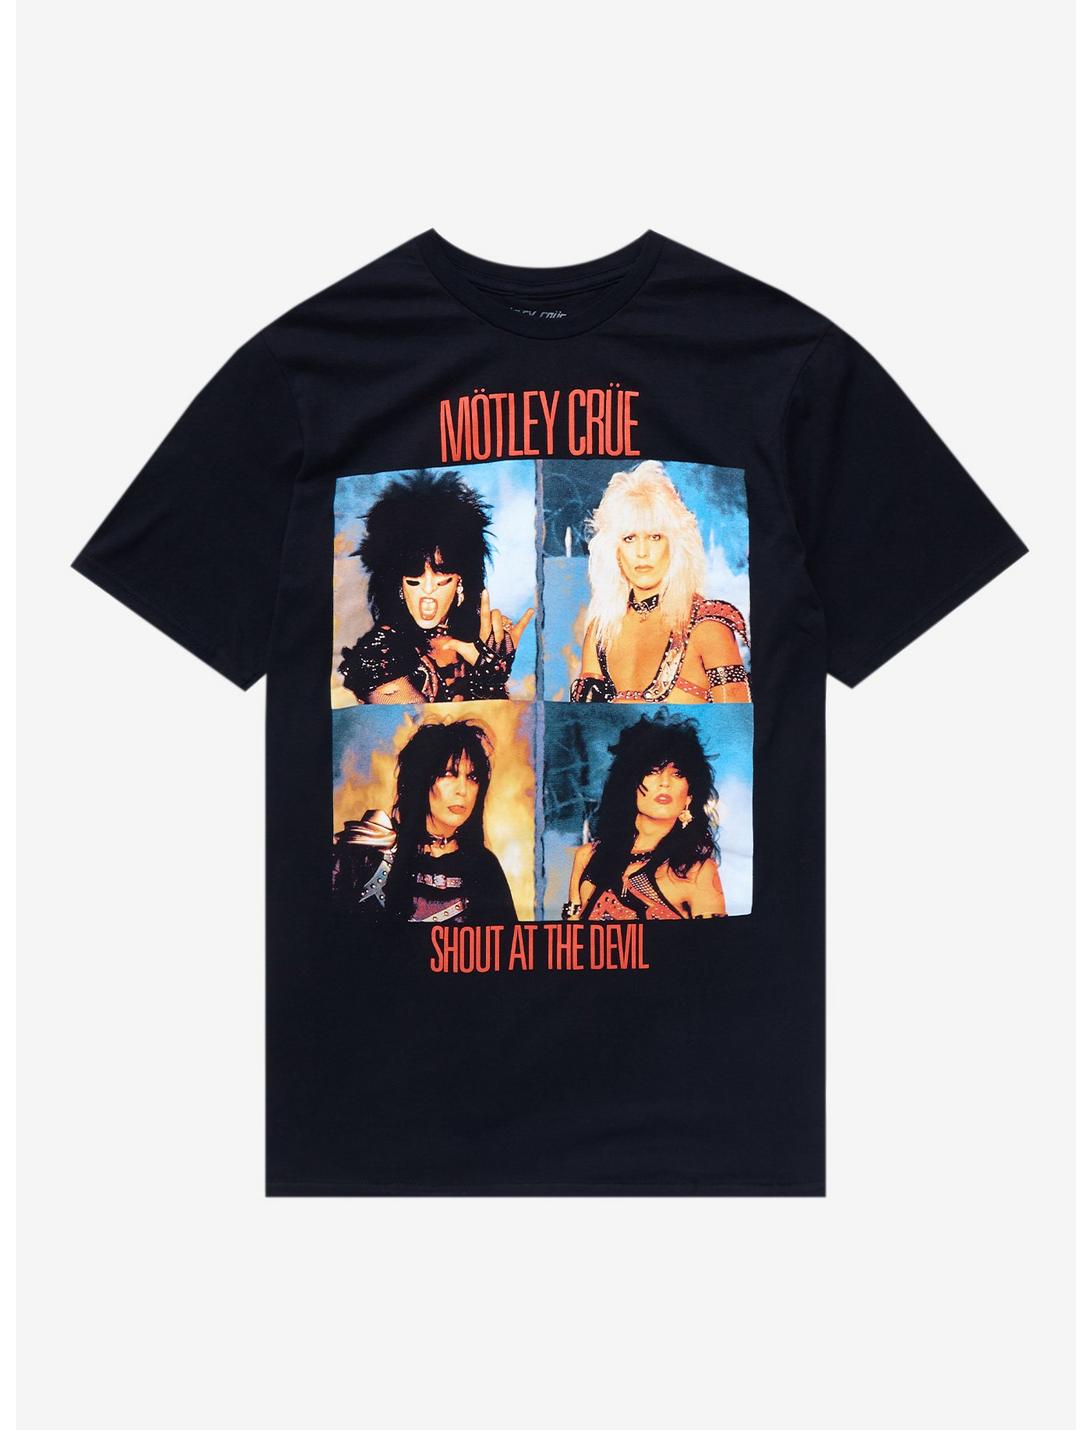 Motley Crue Shout At The Devil Album Cover T-Shirt, BLACK, hi-res